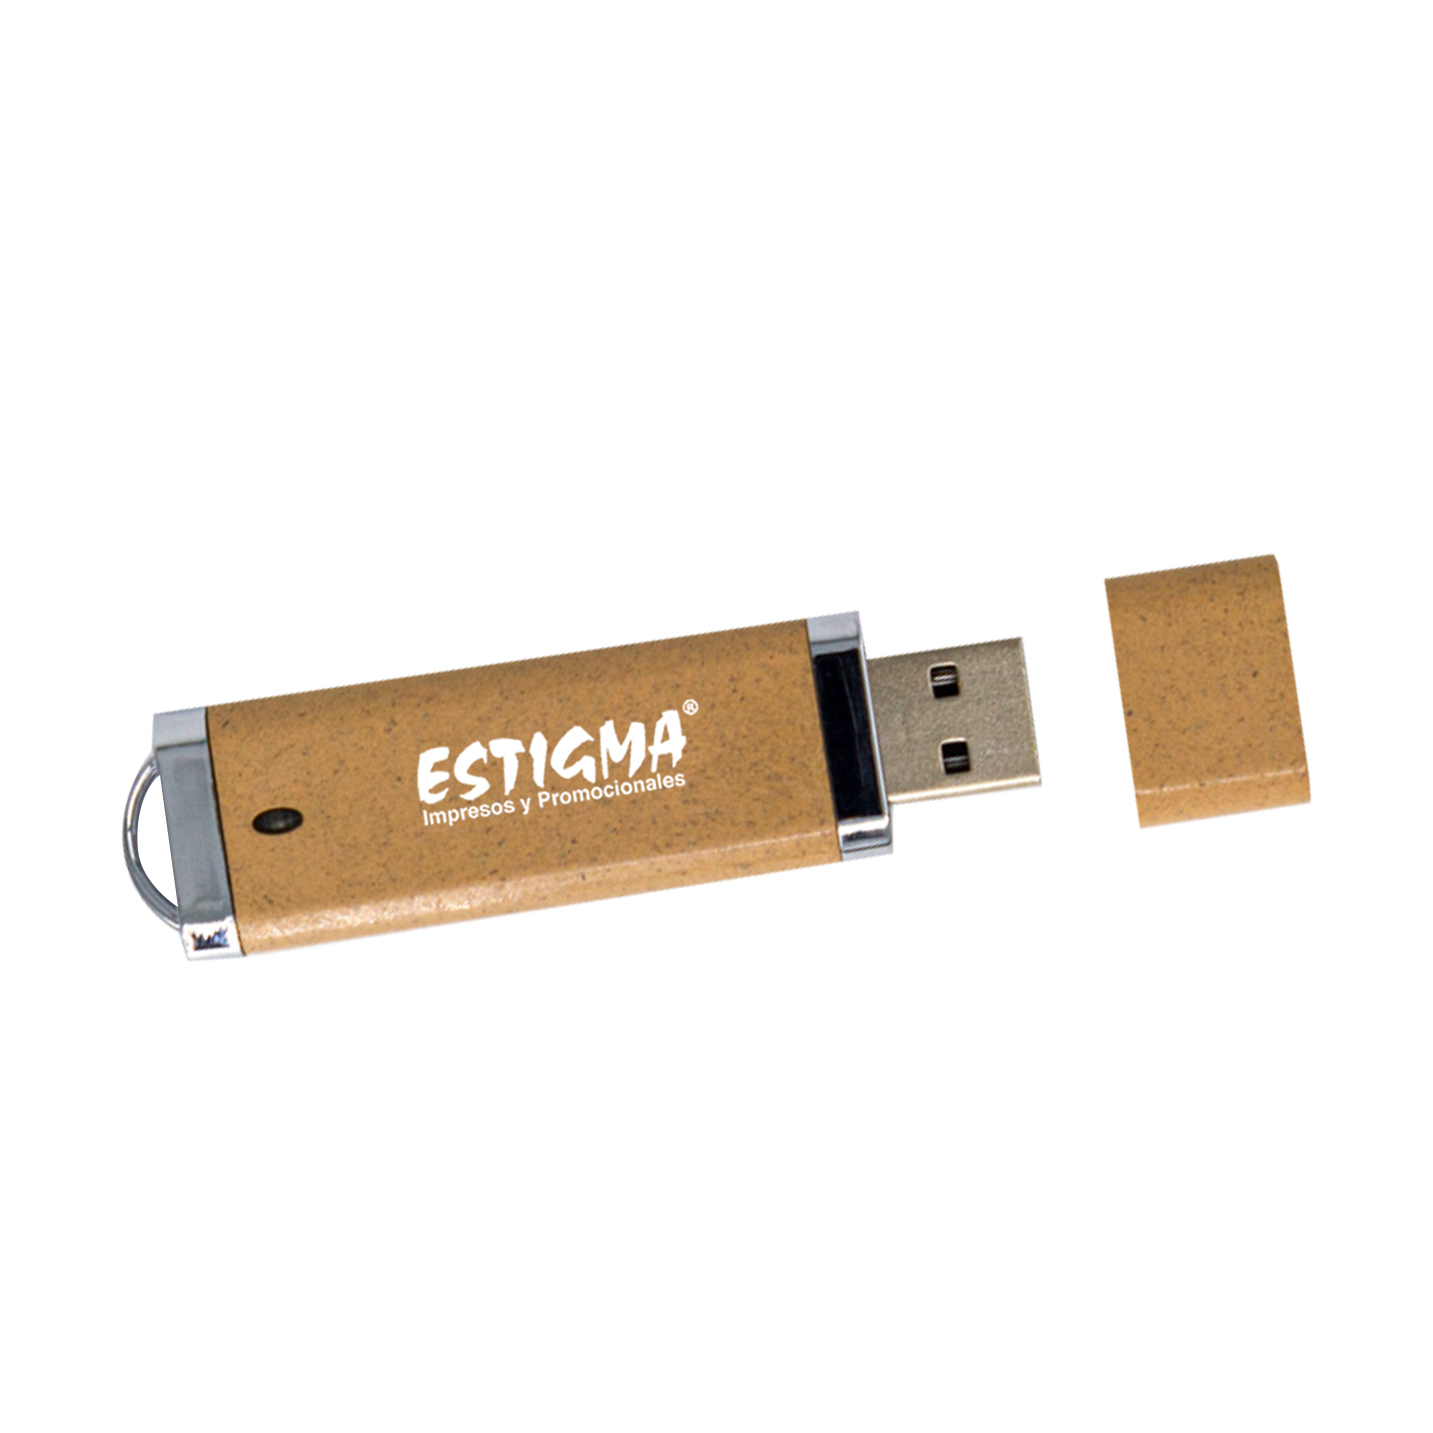 USB ECOLOGICA, USB PERSONALIZADA, USB PROMOCIONAL